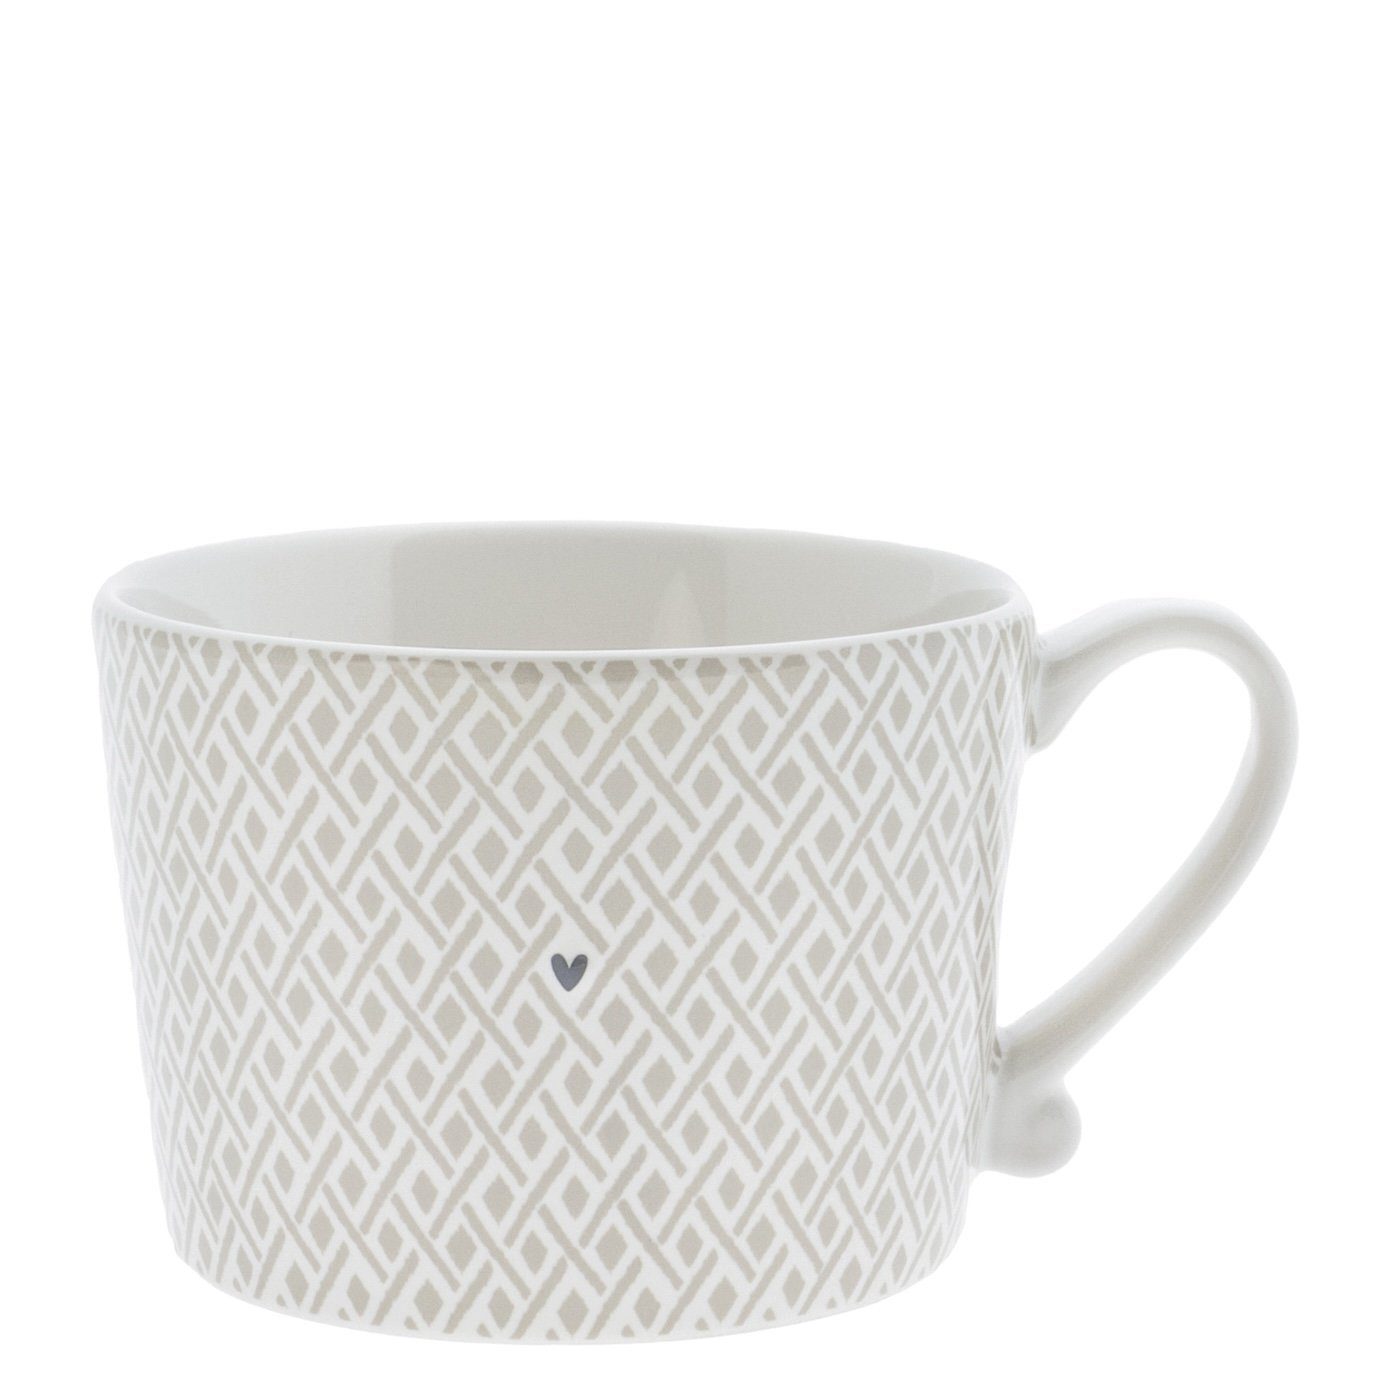 Henkel (RJ/CUP Keramik Tasse titane Tasse mit Keramik, Check Collections handbemalt weiß Little 112 BT), Bastion